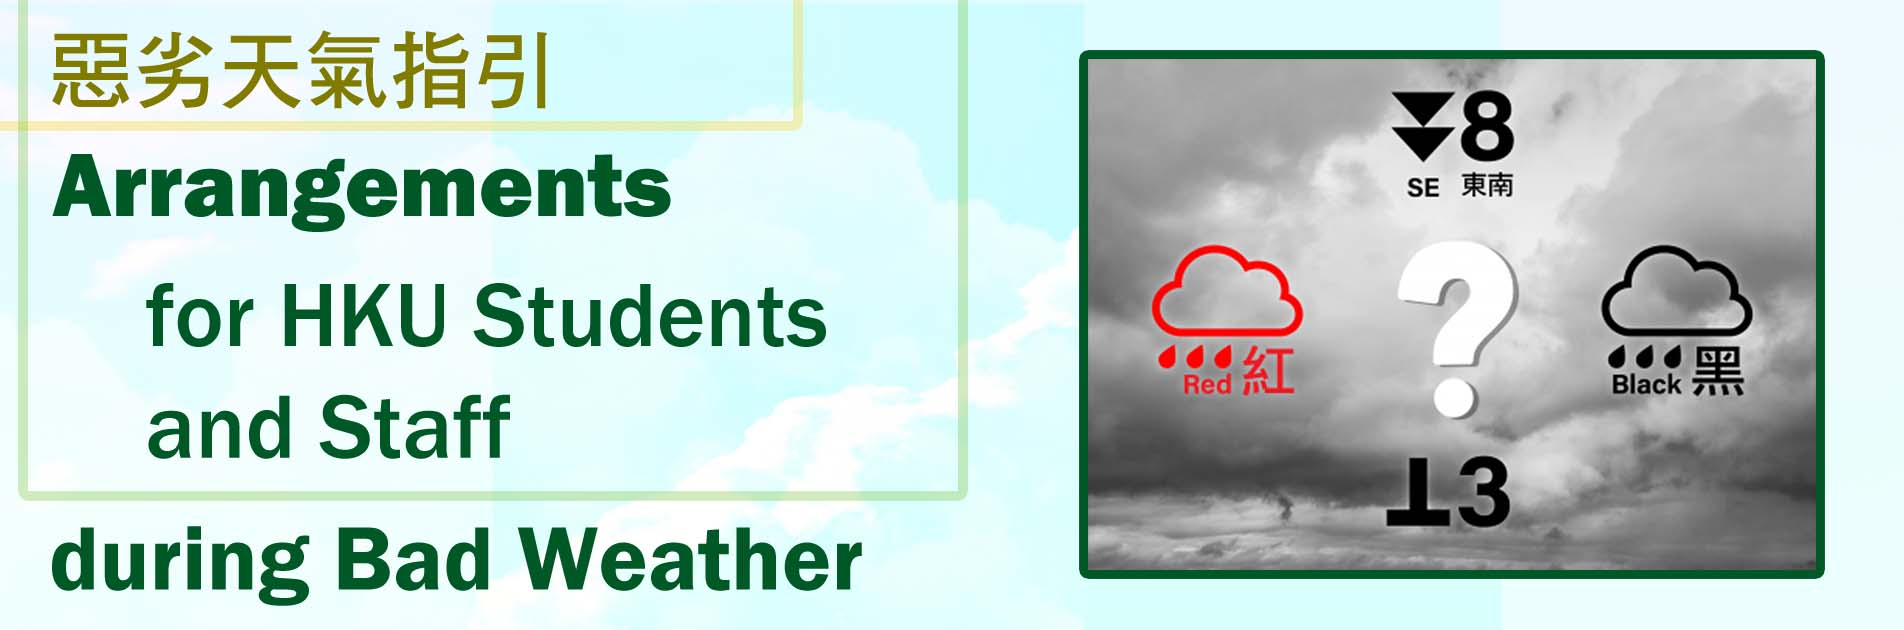 arrangements-during-bad-weather-202308311552